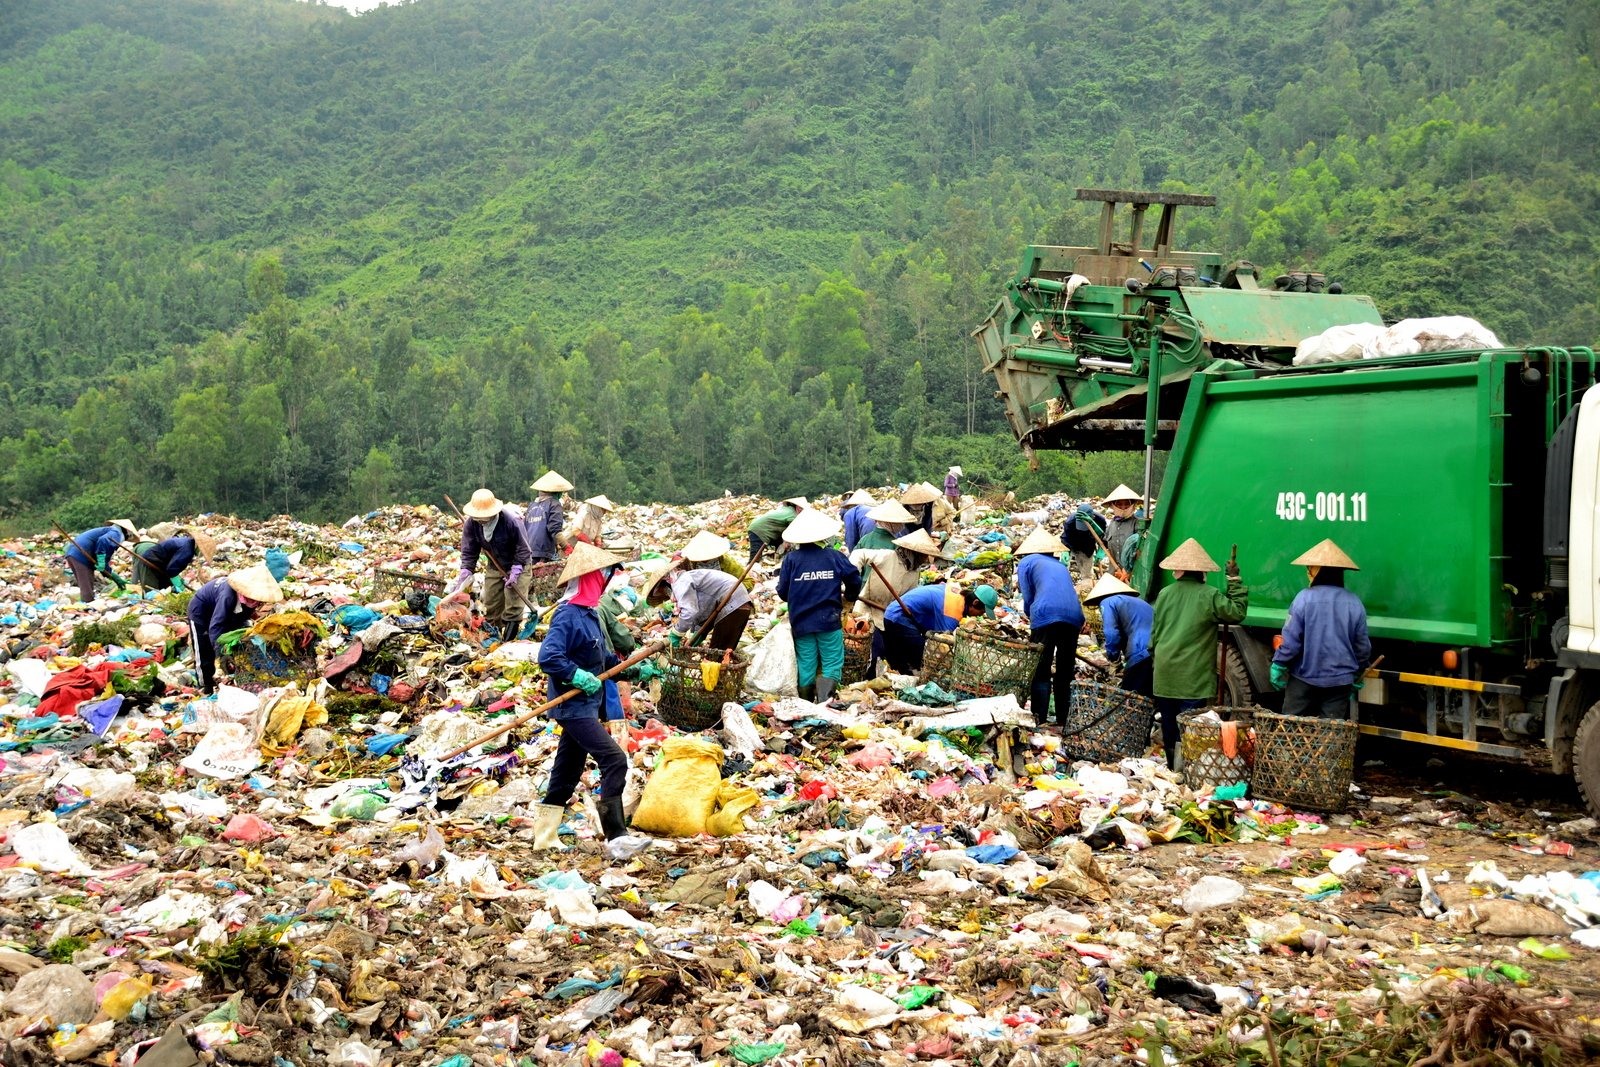 Xử lý rác đô thị: Vẫn lạc hậu, kém vệ sinh